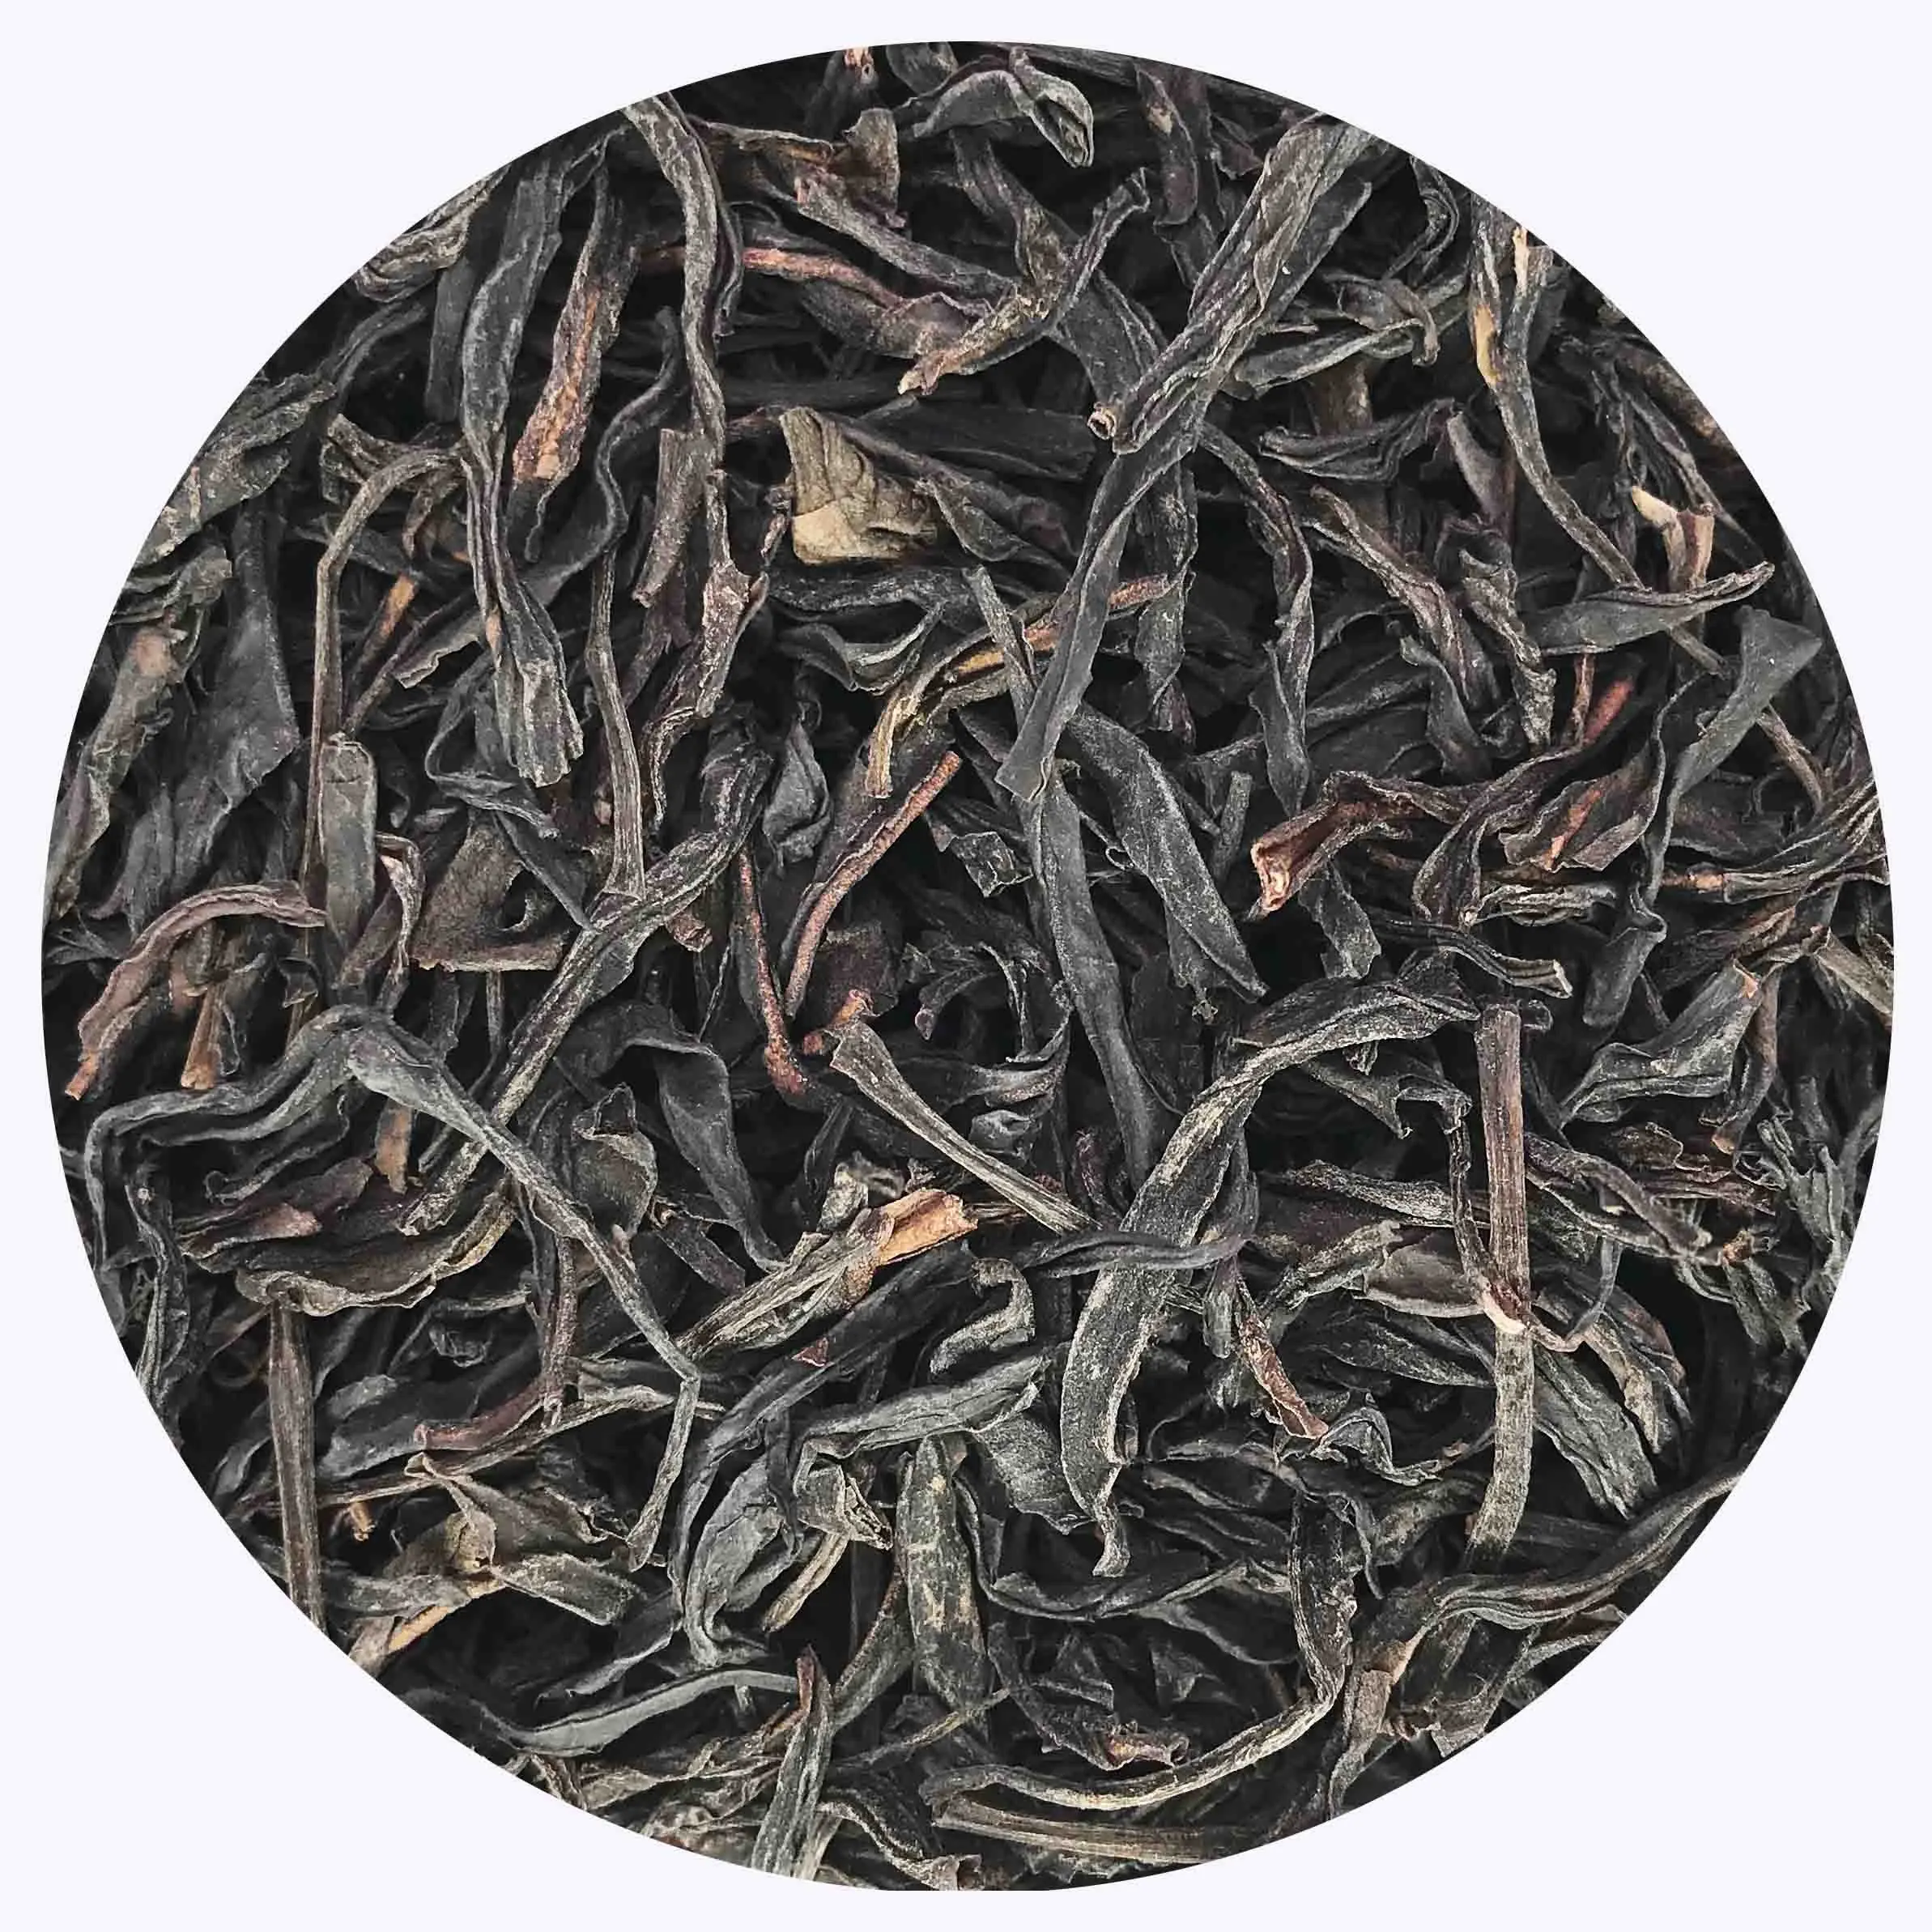 Chinese Feng Huang Phoenix Mountain Dan Cong Single Bush Loose Tea Oolong